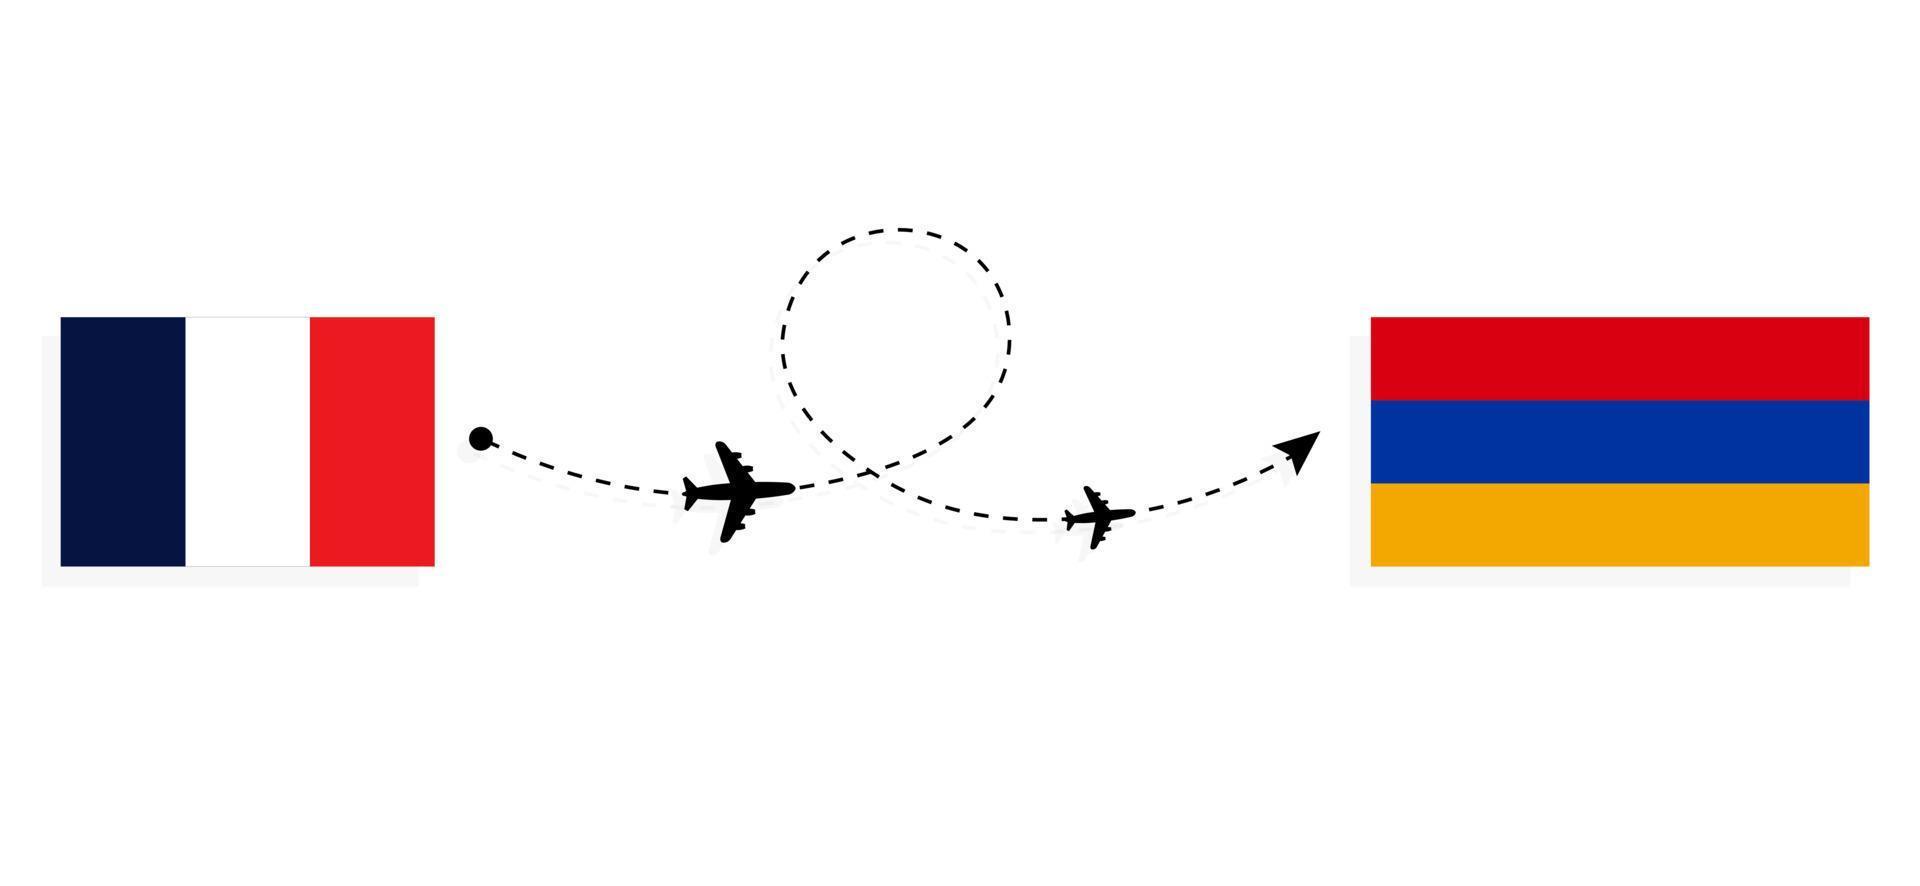 vol et voyage de la france à l'arménie par concept de voyage en avion de passagers vecteur